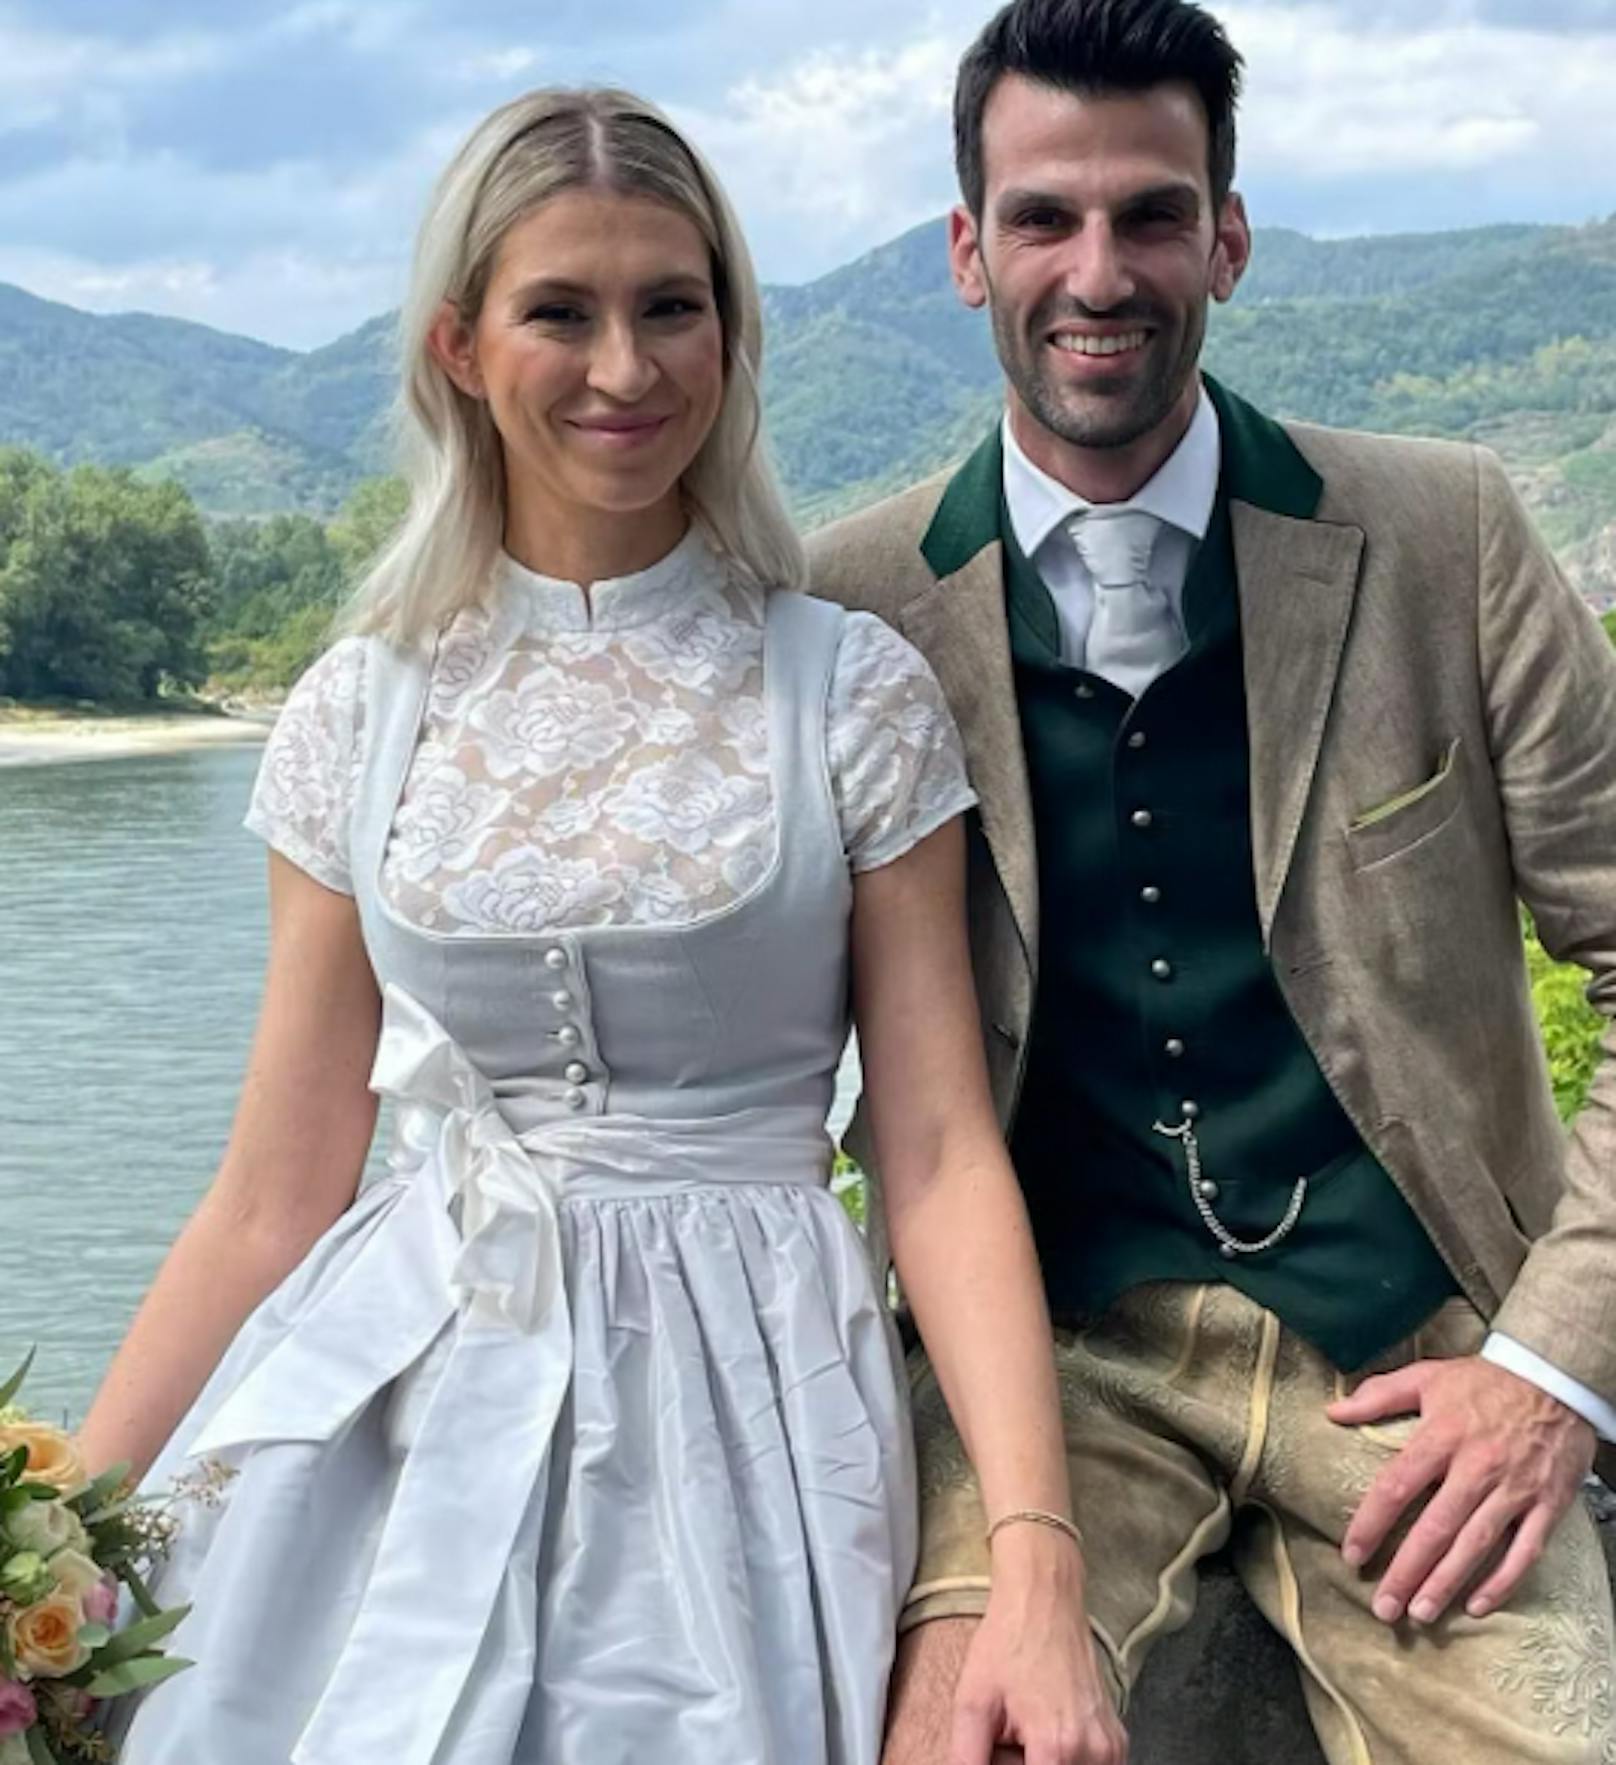 Hochzeit von Udo Landbauer mit seiner Simone (32) im Sommer 2022, im Februar war Udo Landbauer Vater geworden.